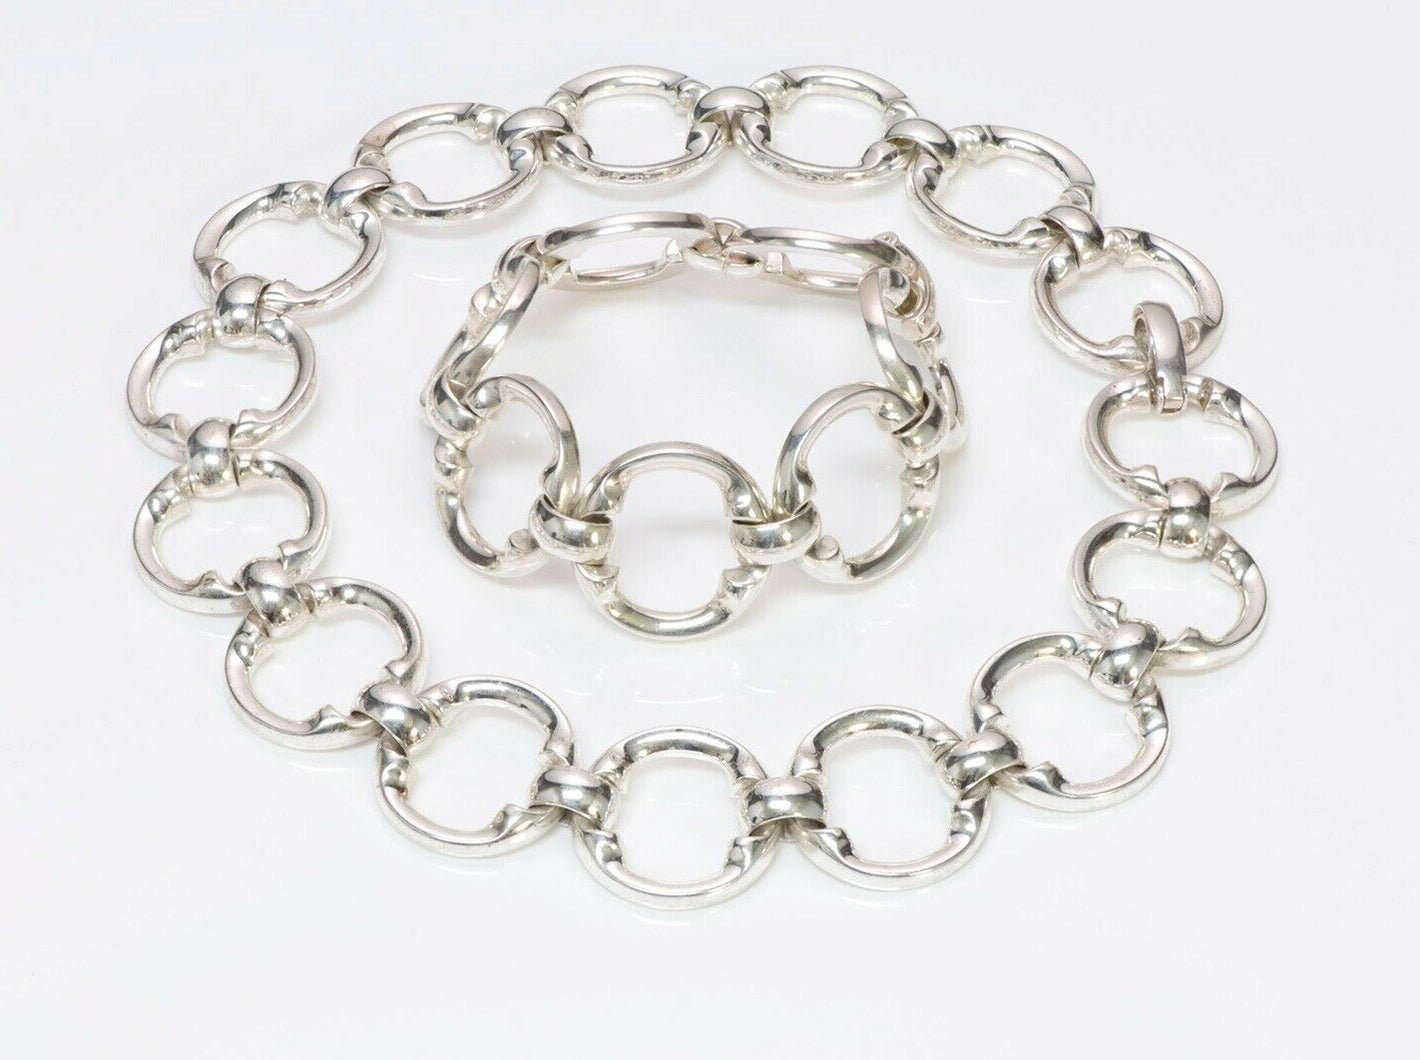 Christian DIOR Henkel & Grosse Sterling Silver Chain Link Necklace Bracelet Set